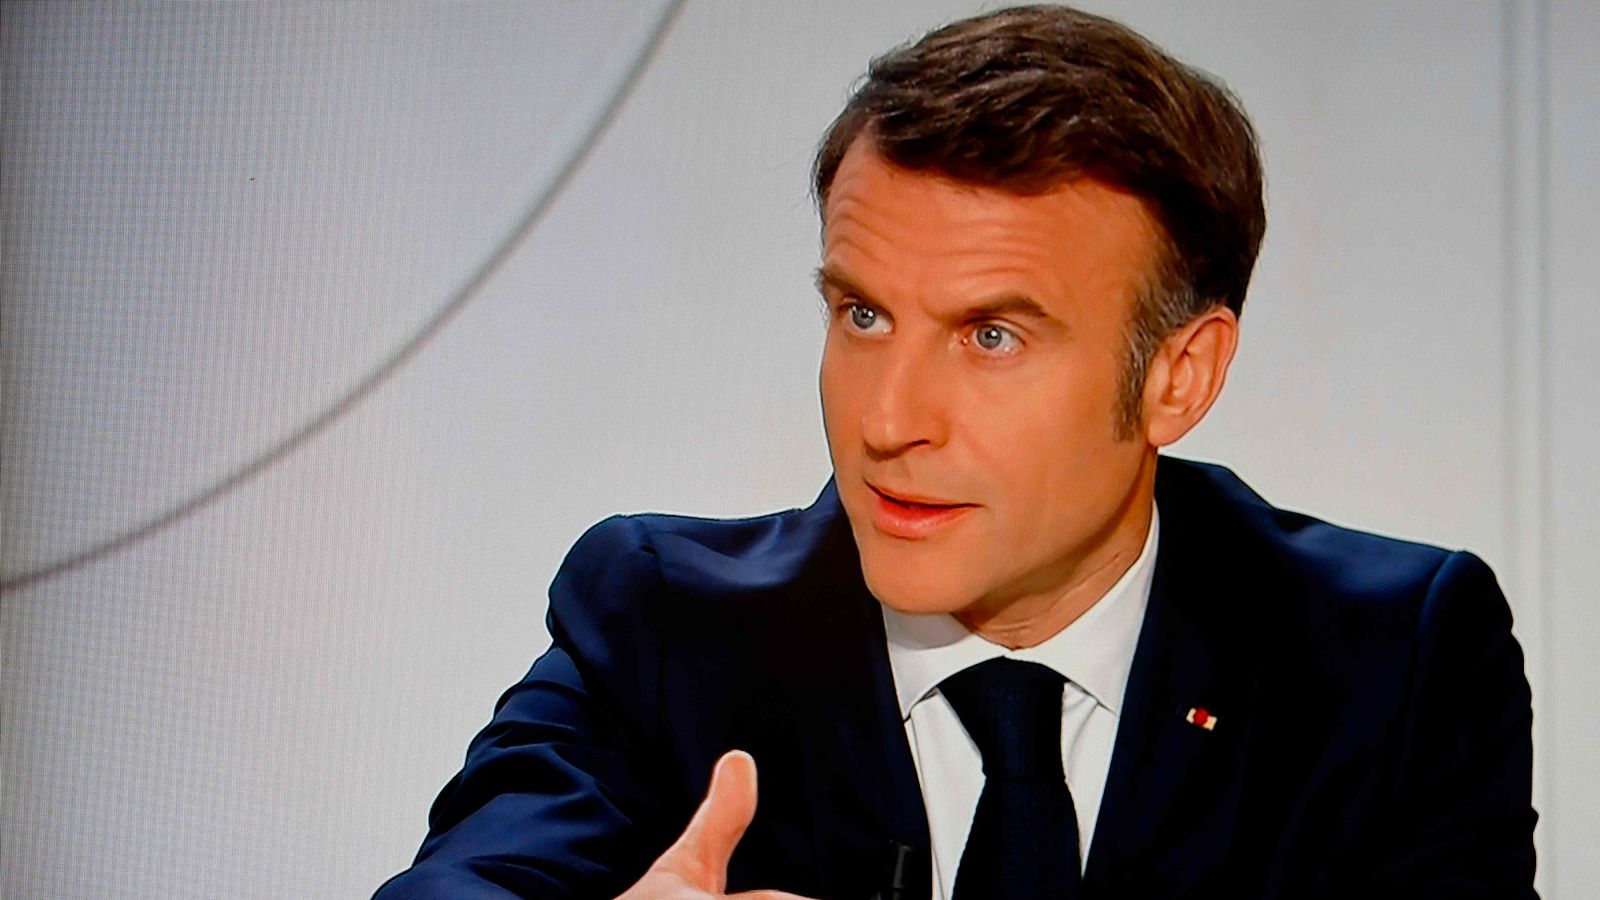 Macron descarta tomar la iniciativa contra Rusia aunque insta a "estar preparados" por si la situación en Ucrania "empeora"